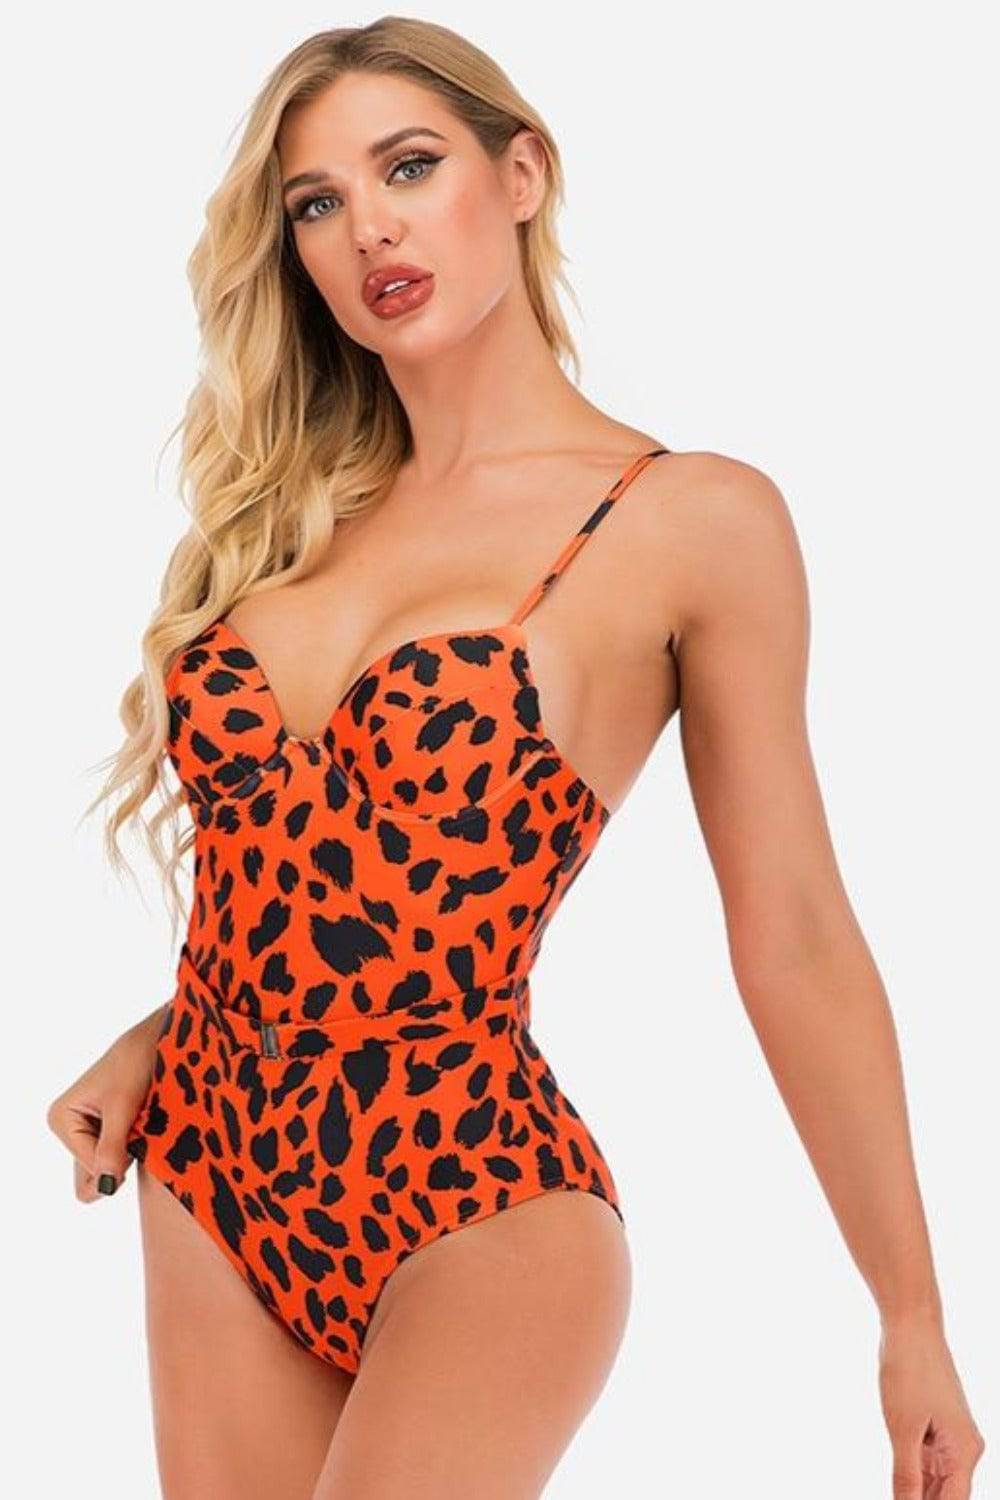 Leopard Print Corset Plus size Swimsuit - Orange - TGC Boutique - Leopard Plus Size Swimsuit